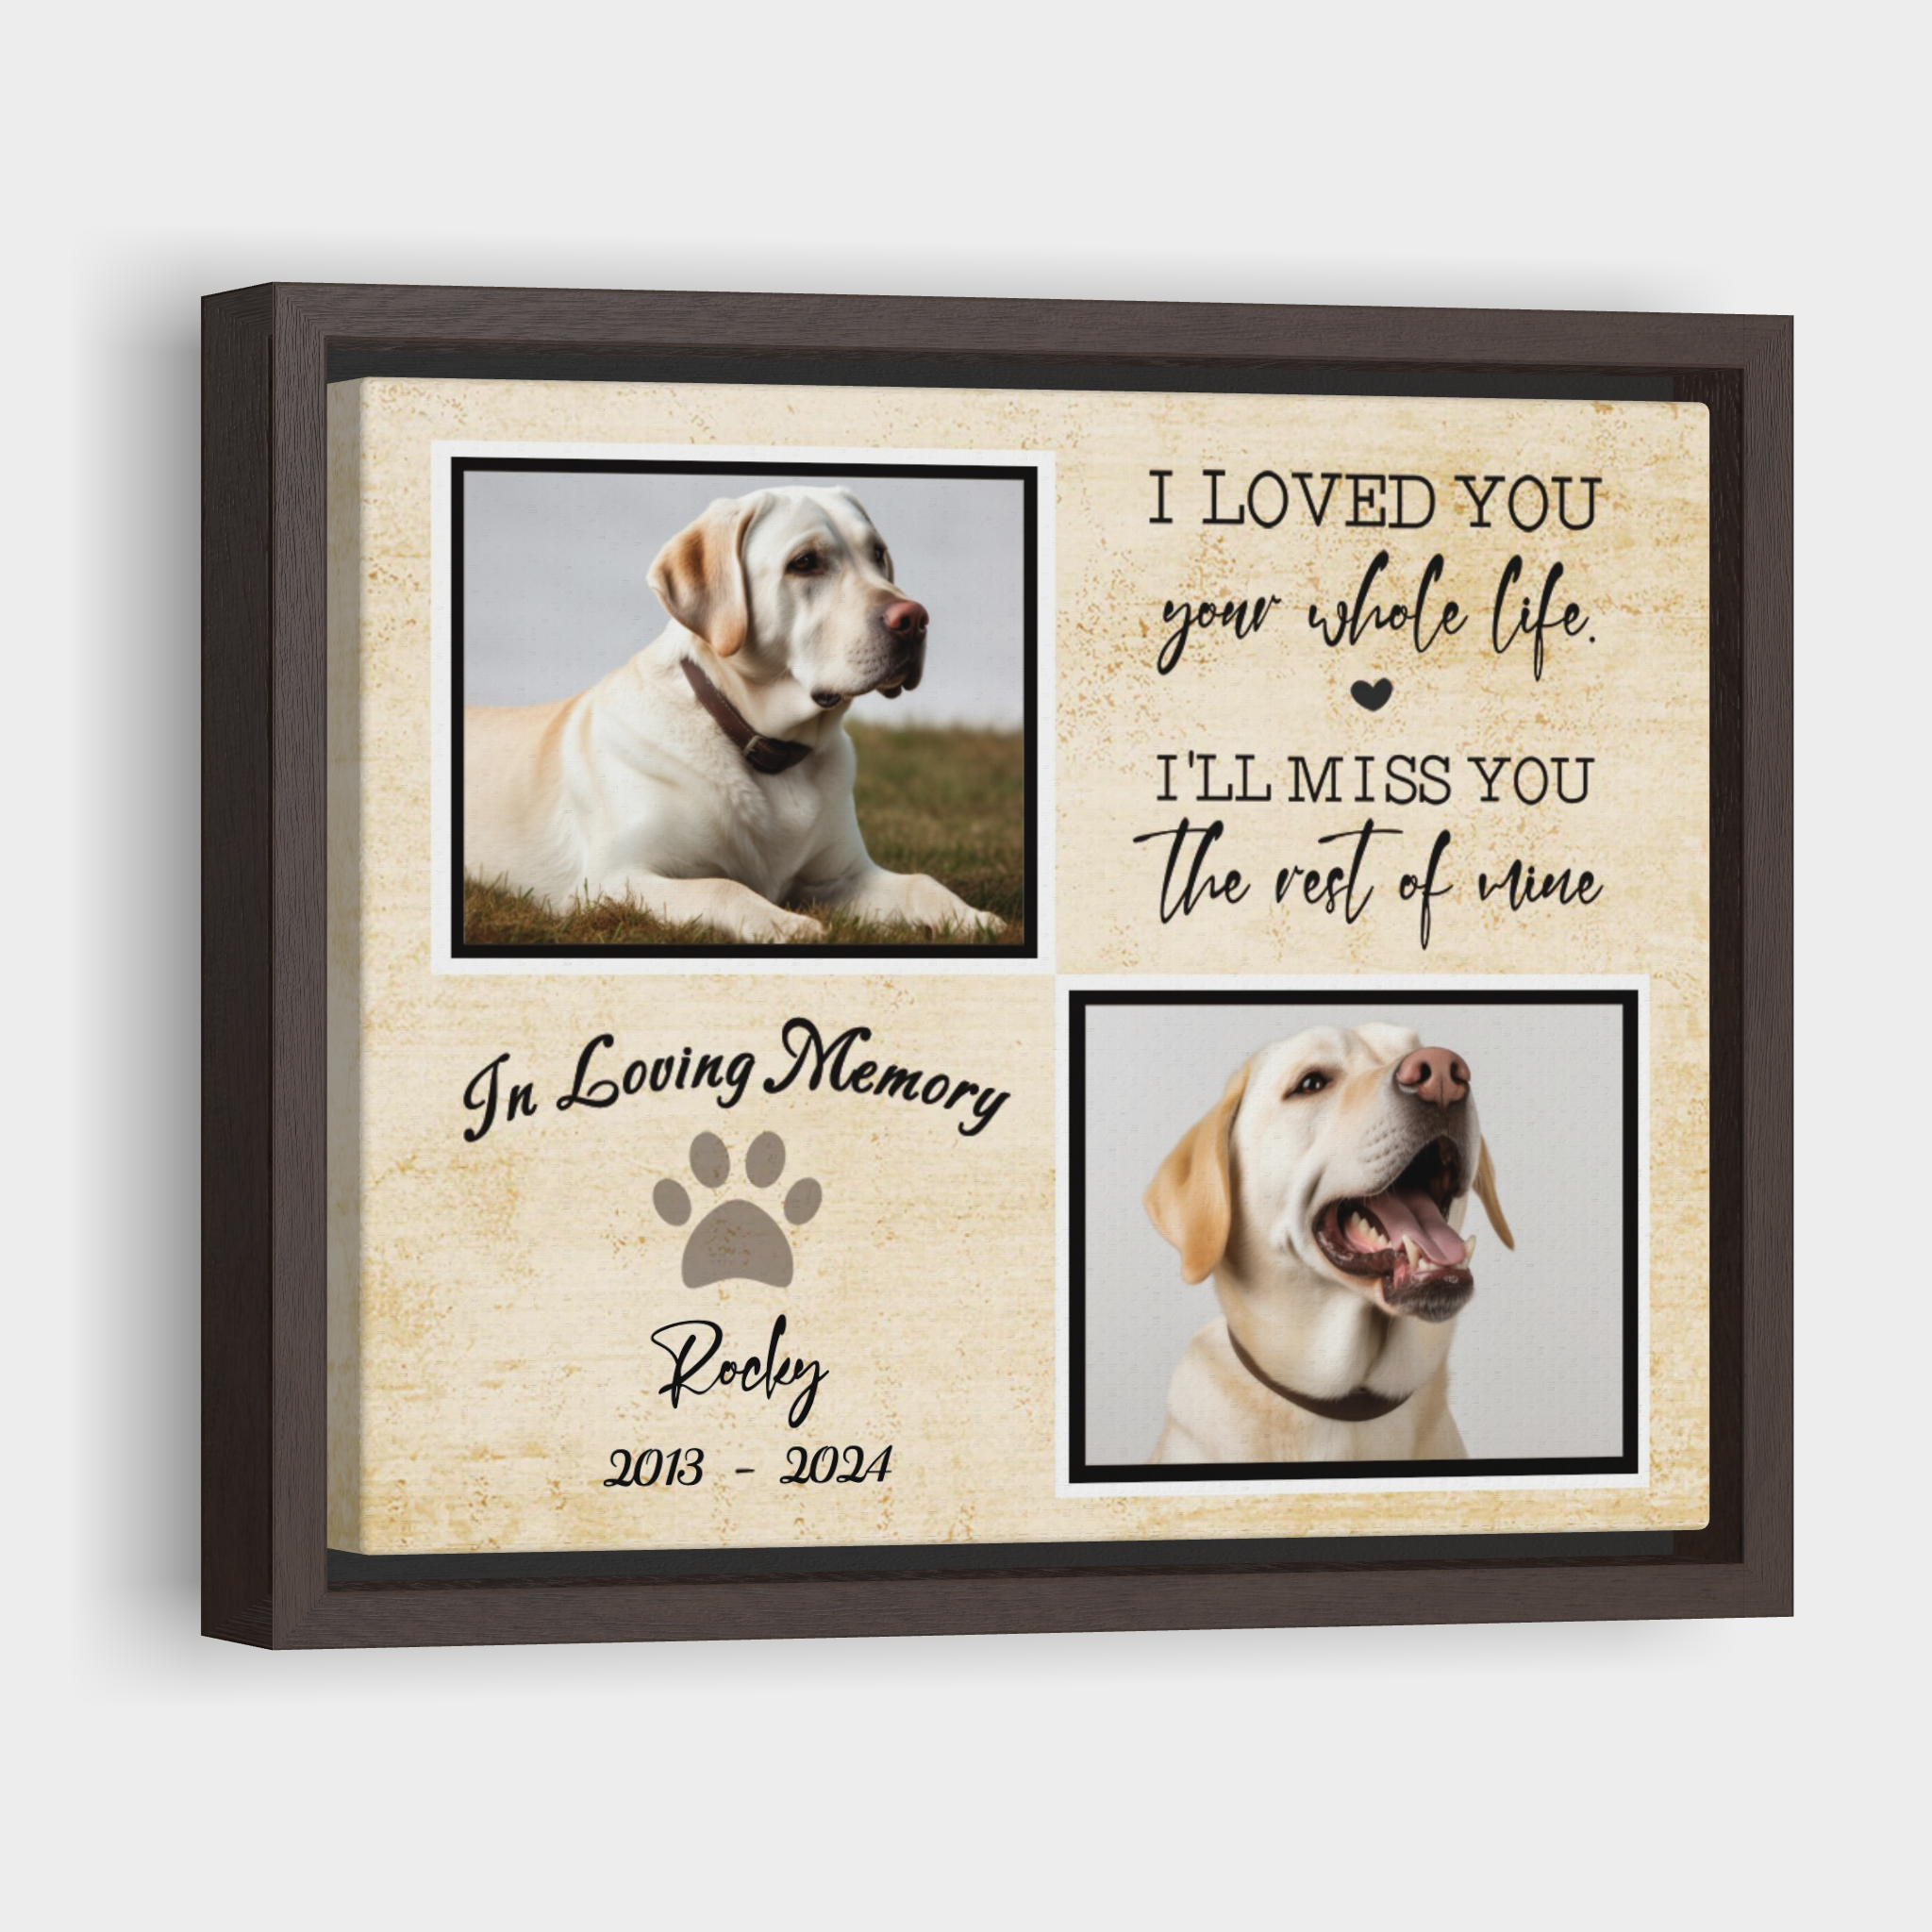 In Loving Memory - Personalized Pet Memorial Print